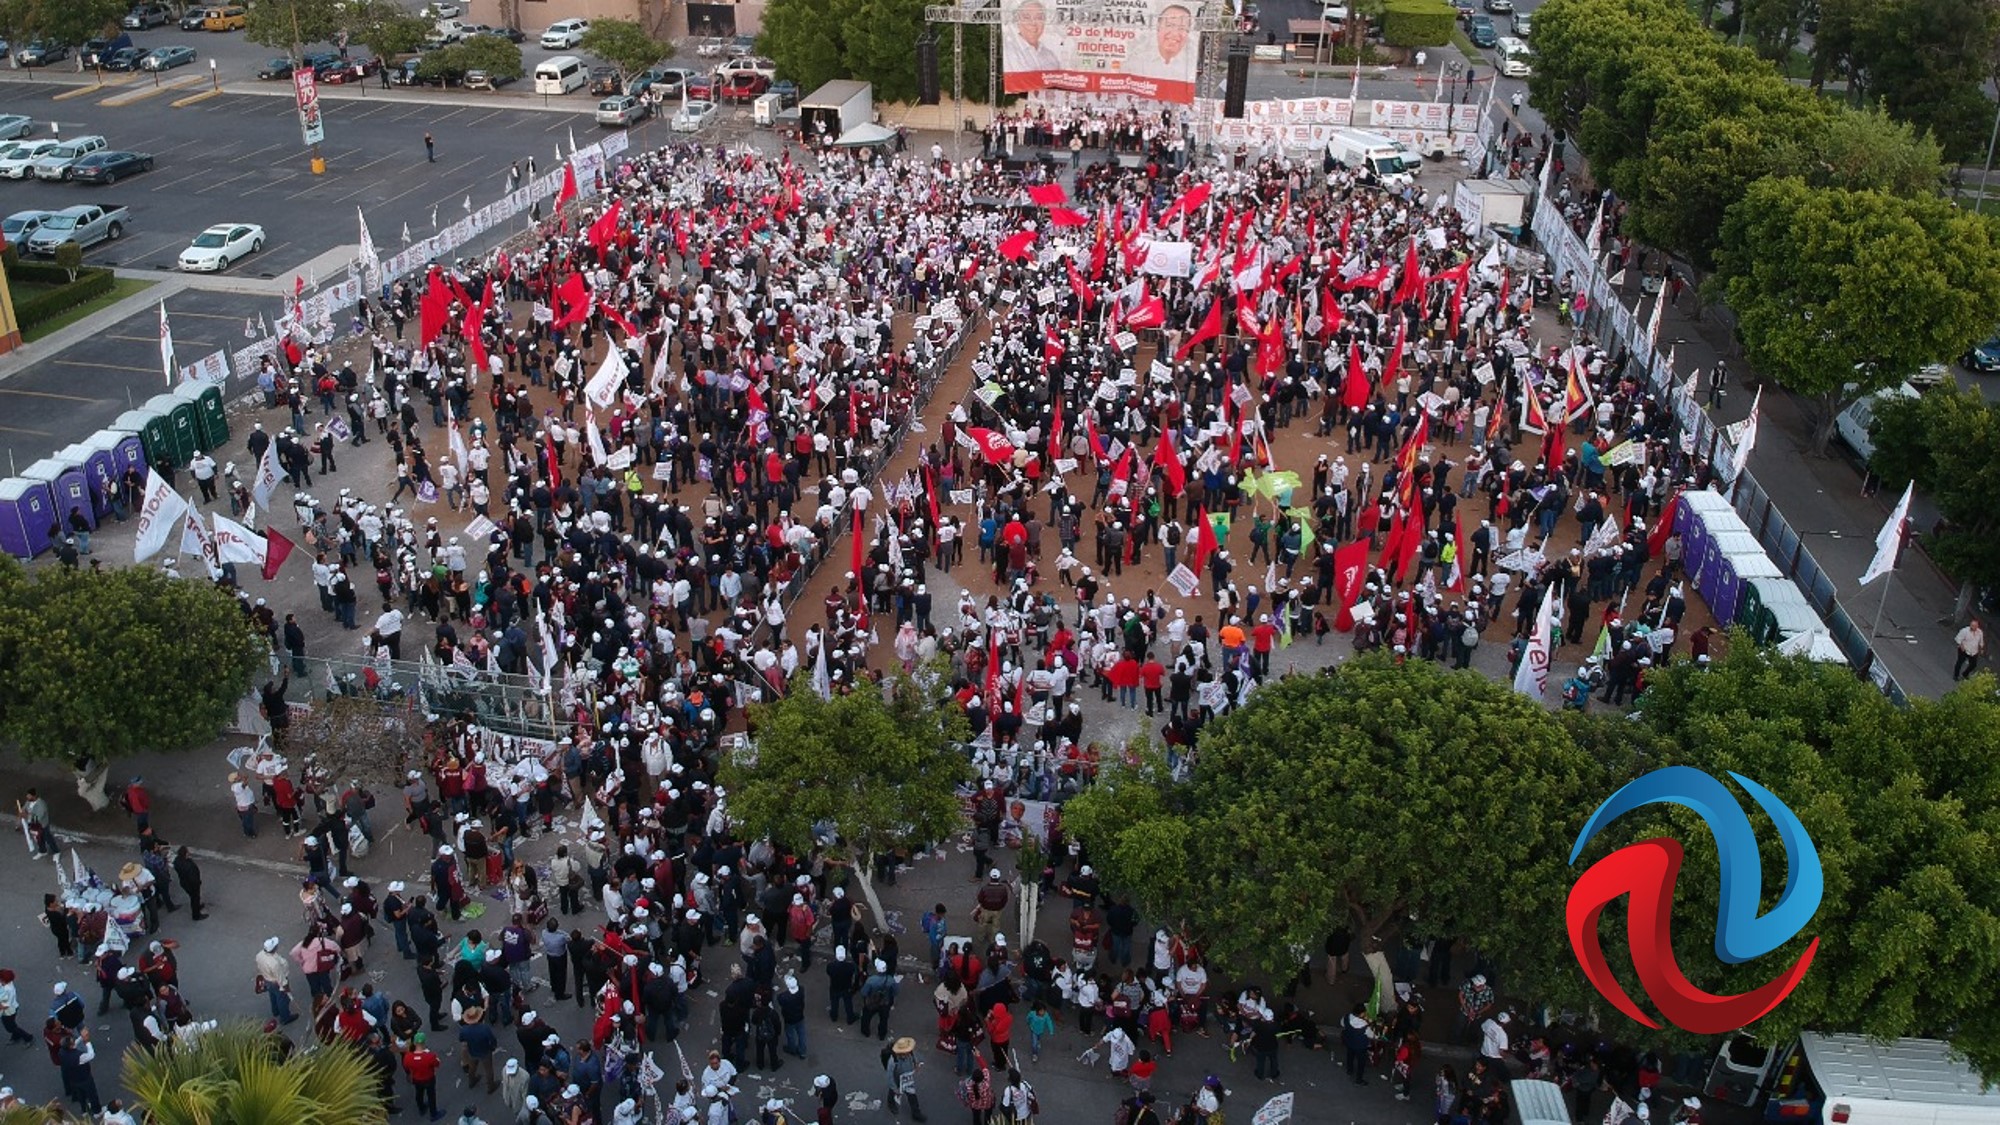 Morena cierra su campaña en Tijuana